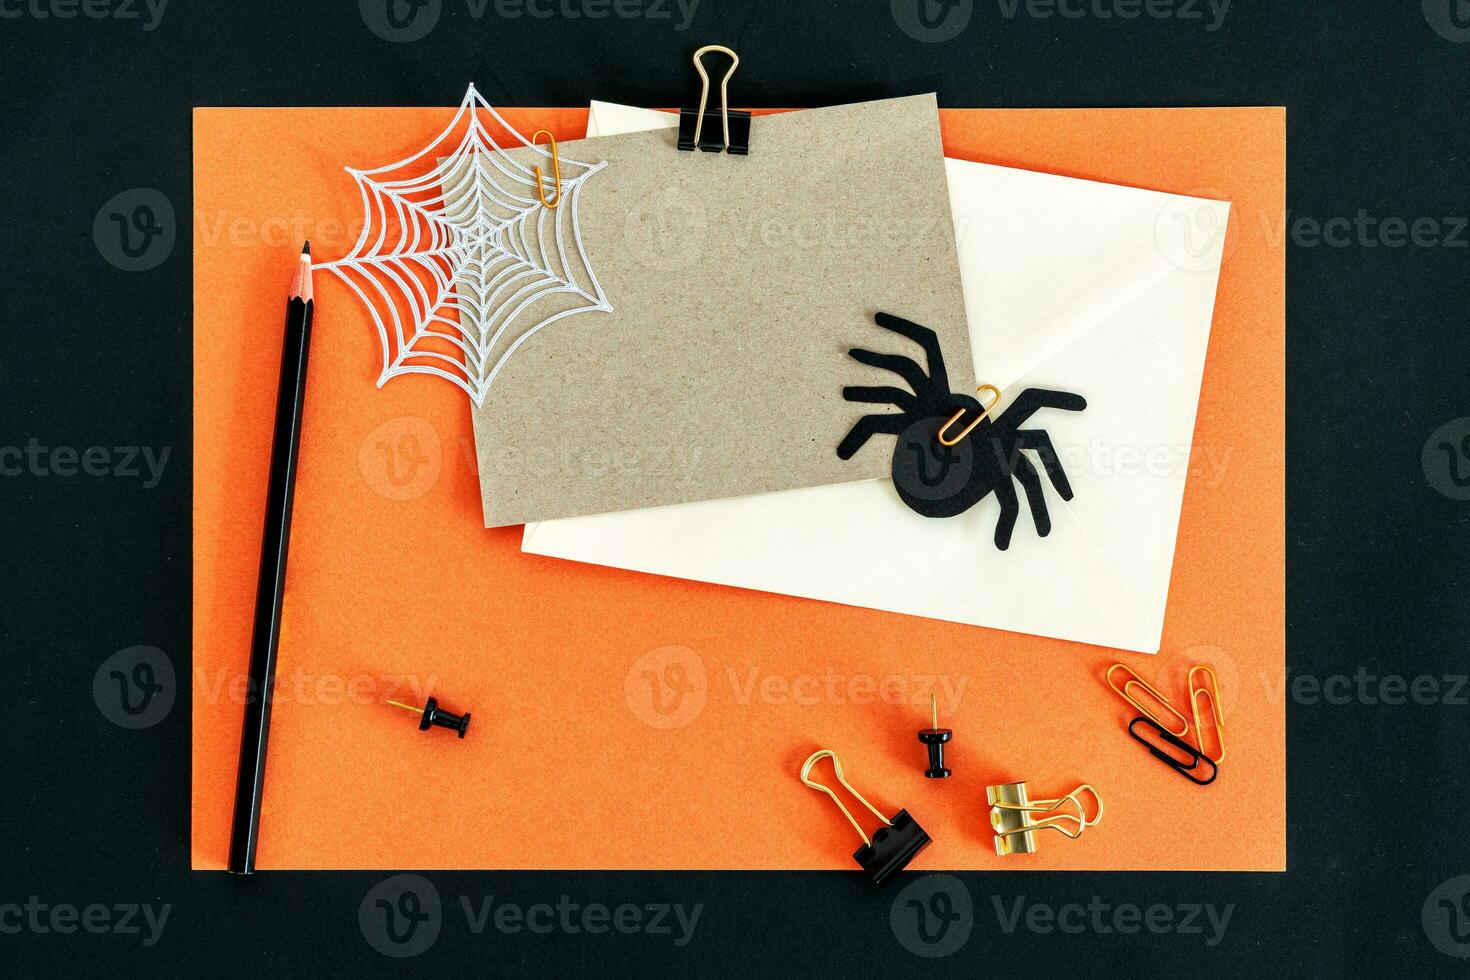 Herbst fallen Halloween Thema Desktop Arbeitsplatz mit Karte, Umschlag, Bleistift, Clips auf stilvoll Orange texturiert Hintergrund. foto